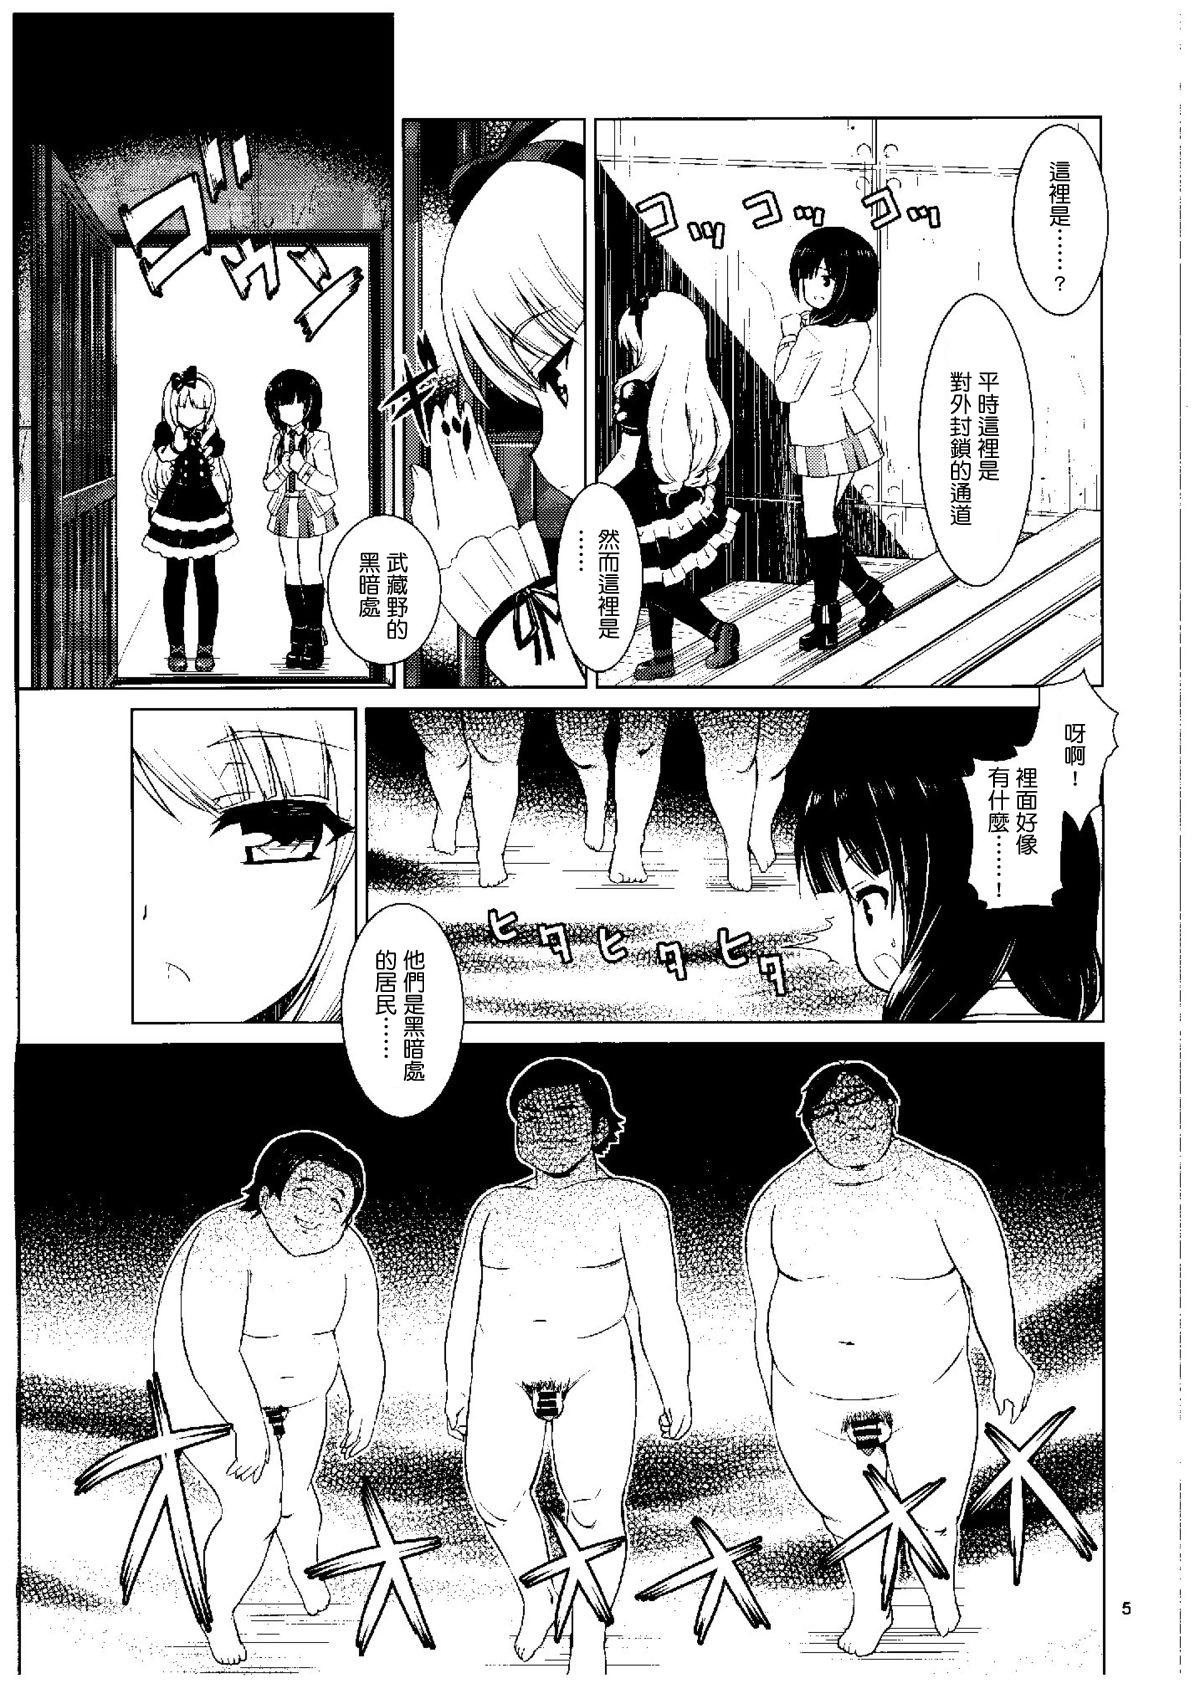 Hiddencam Kuudouka Genshou - Shirobako Tied - Page 4